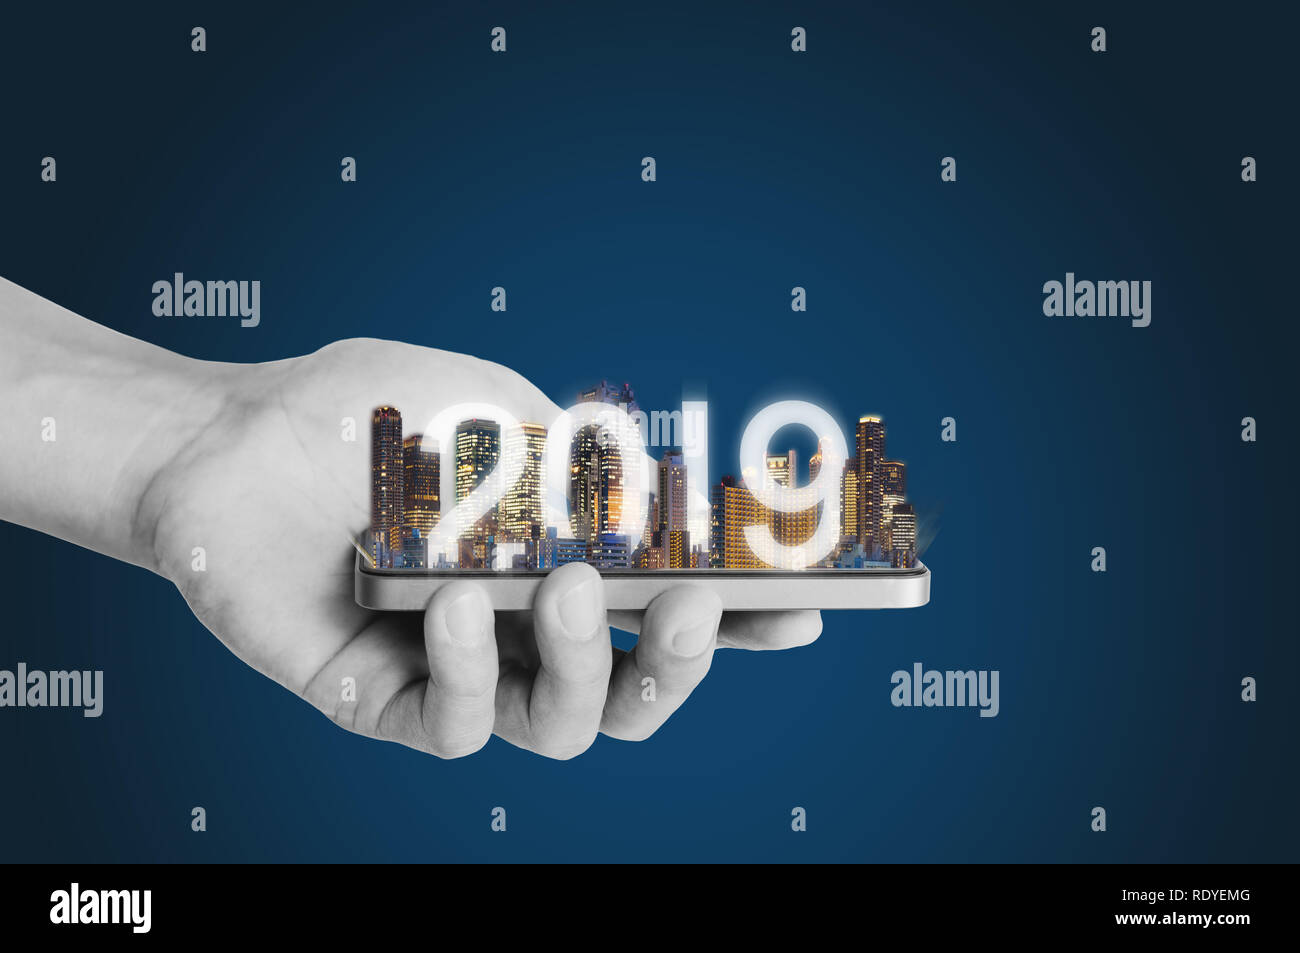 2019 La tecnología de realidad aumentada, nuevas tecnologías y tendencias de inversión empresarial concepto Foto de stock